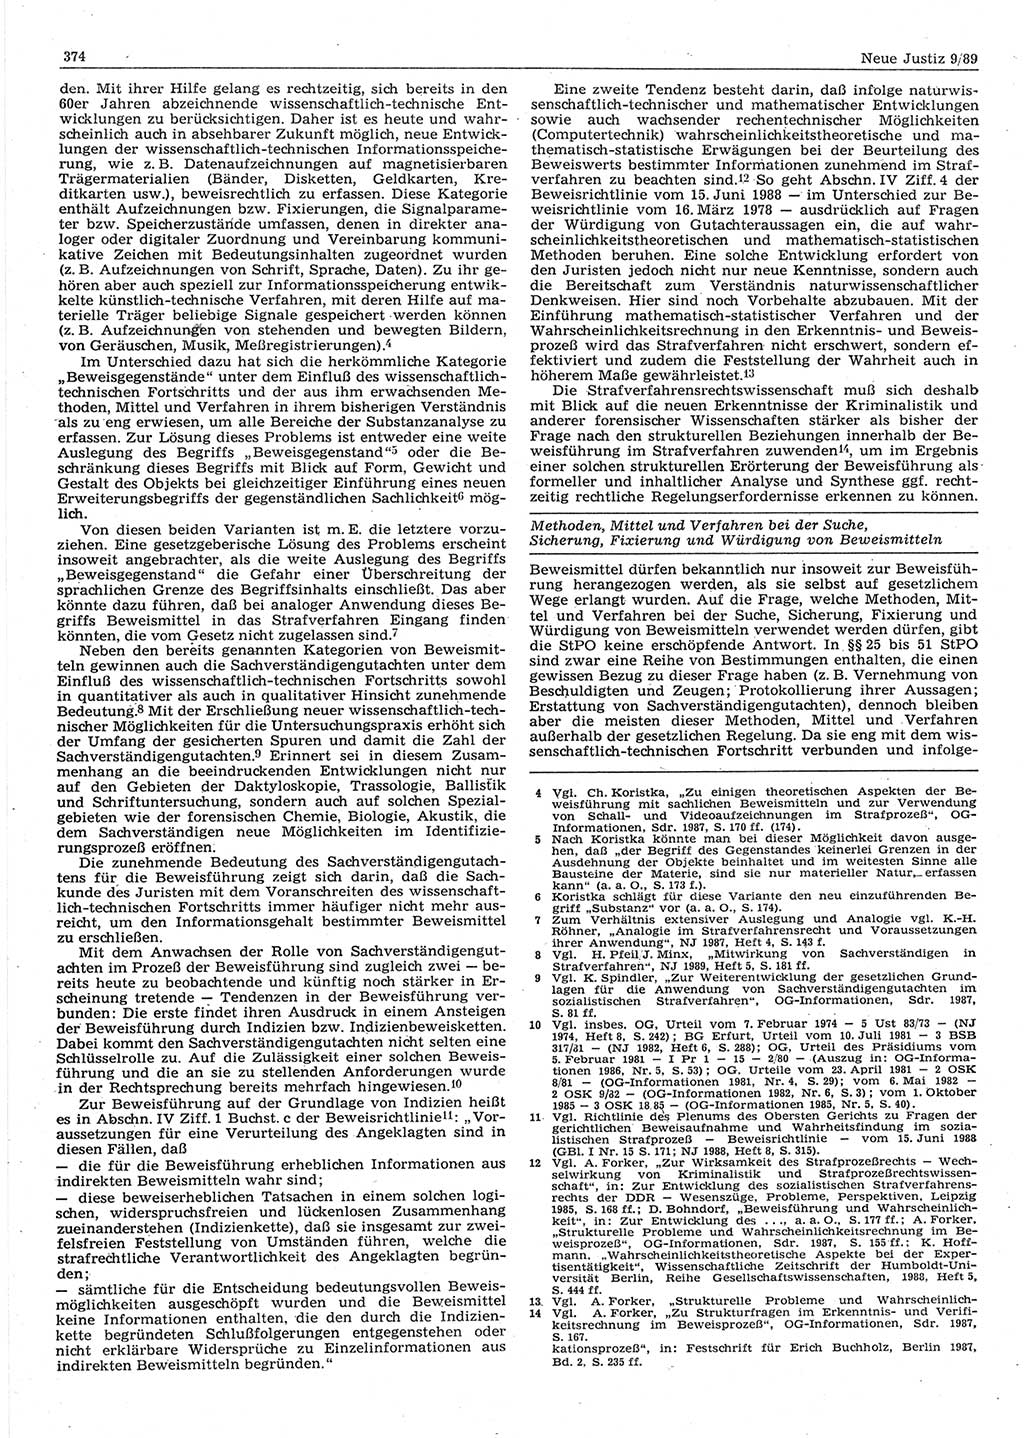 Neue Justiz (NJ), Zeitschrift für sozialistisches Recht und Gesetzlichkeit [Deutsche Demokratische Republik (DDR)], 43. Jahrgang 1989, Seite 374 (NJ DDR 1989, S. 374)